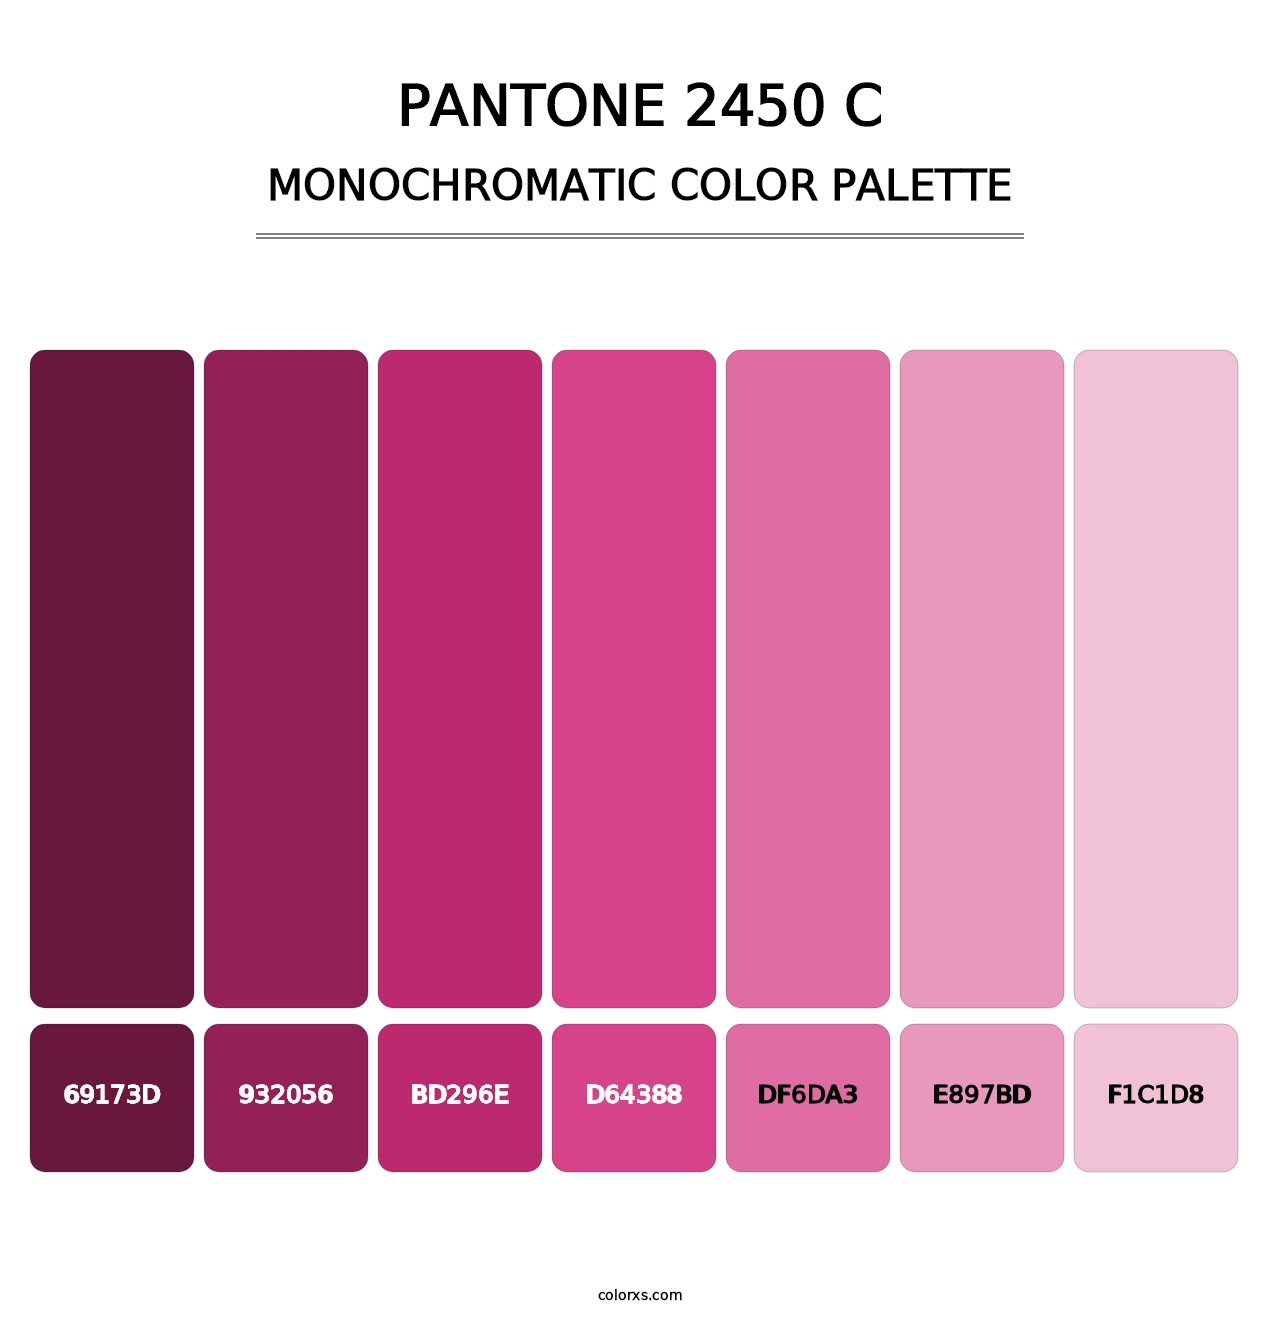 PANTONE 2450 C - Monochromatic Color Palette